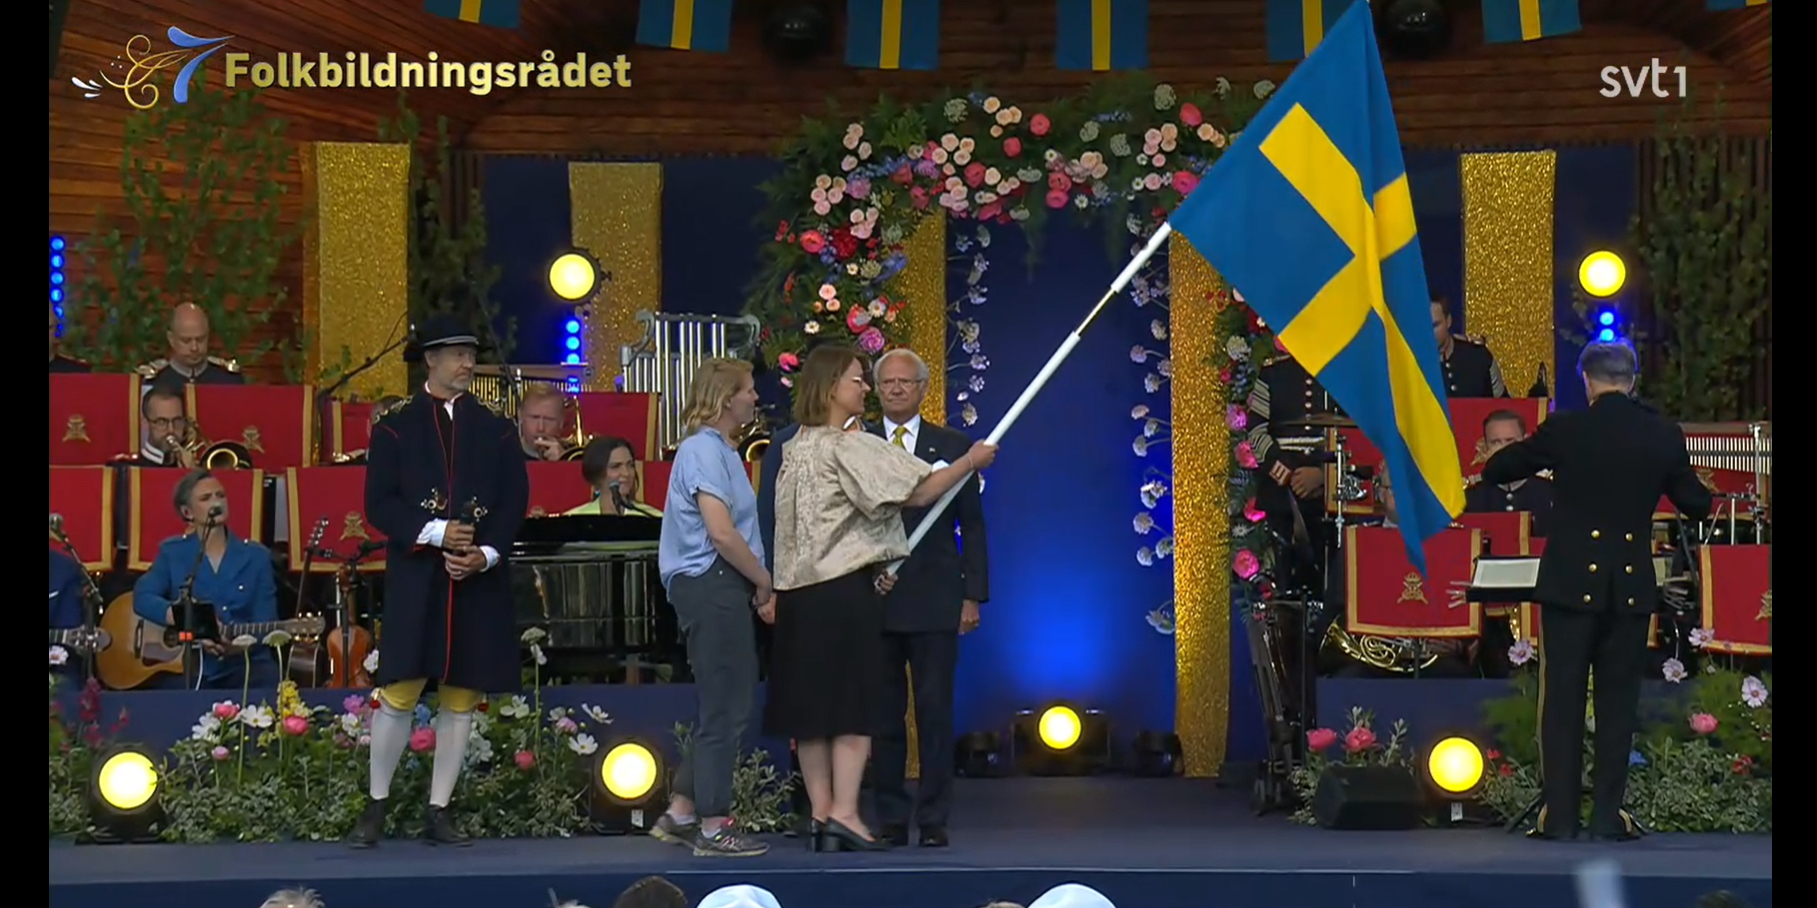 Skärmklipp från tv-sändning. Folkbildningsrådets företrädare har tagit emot en svensk fana från Kungen.